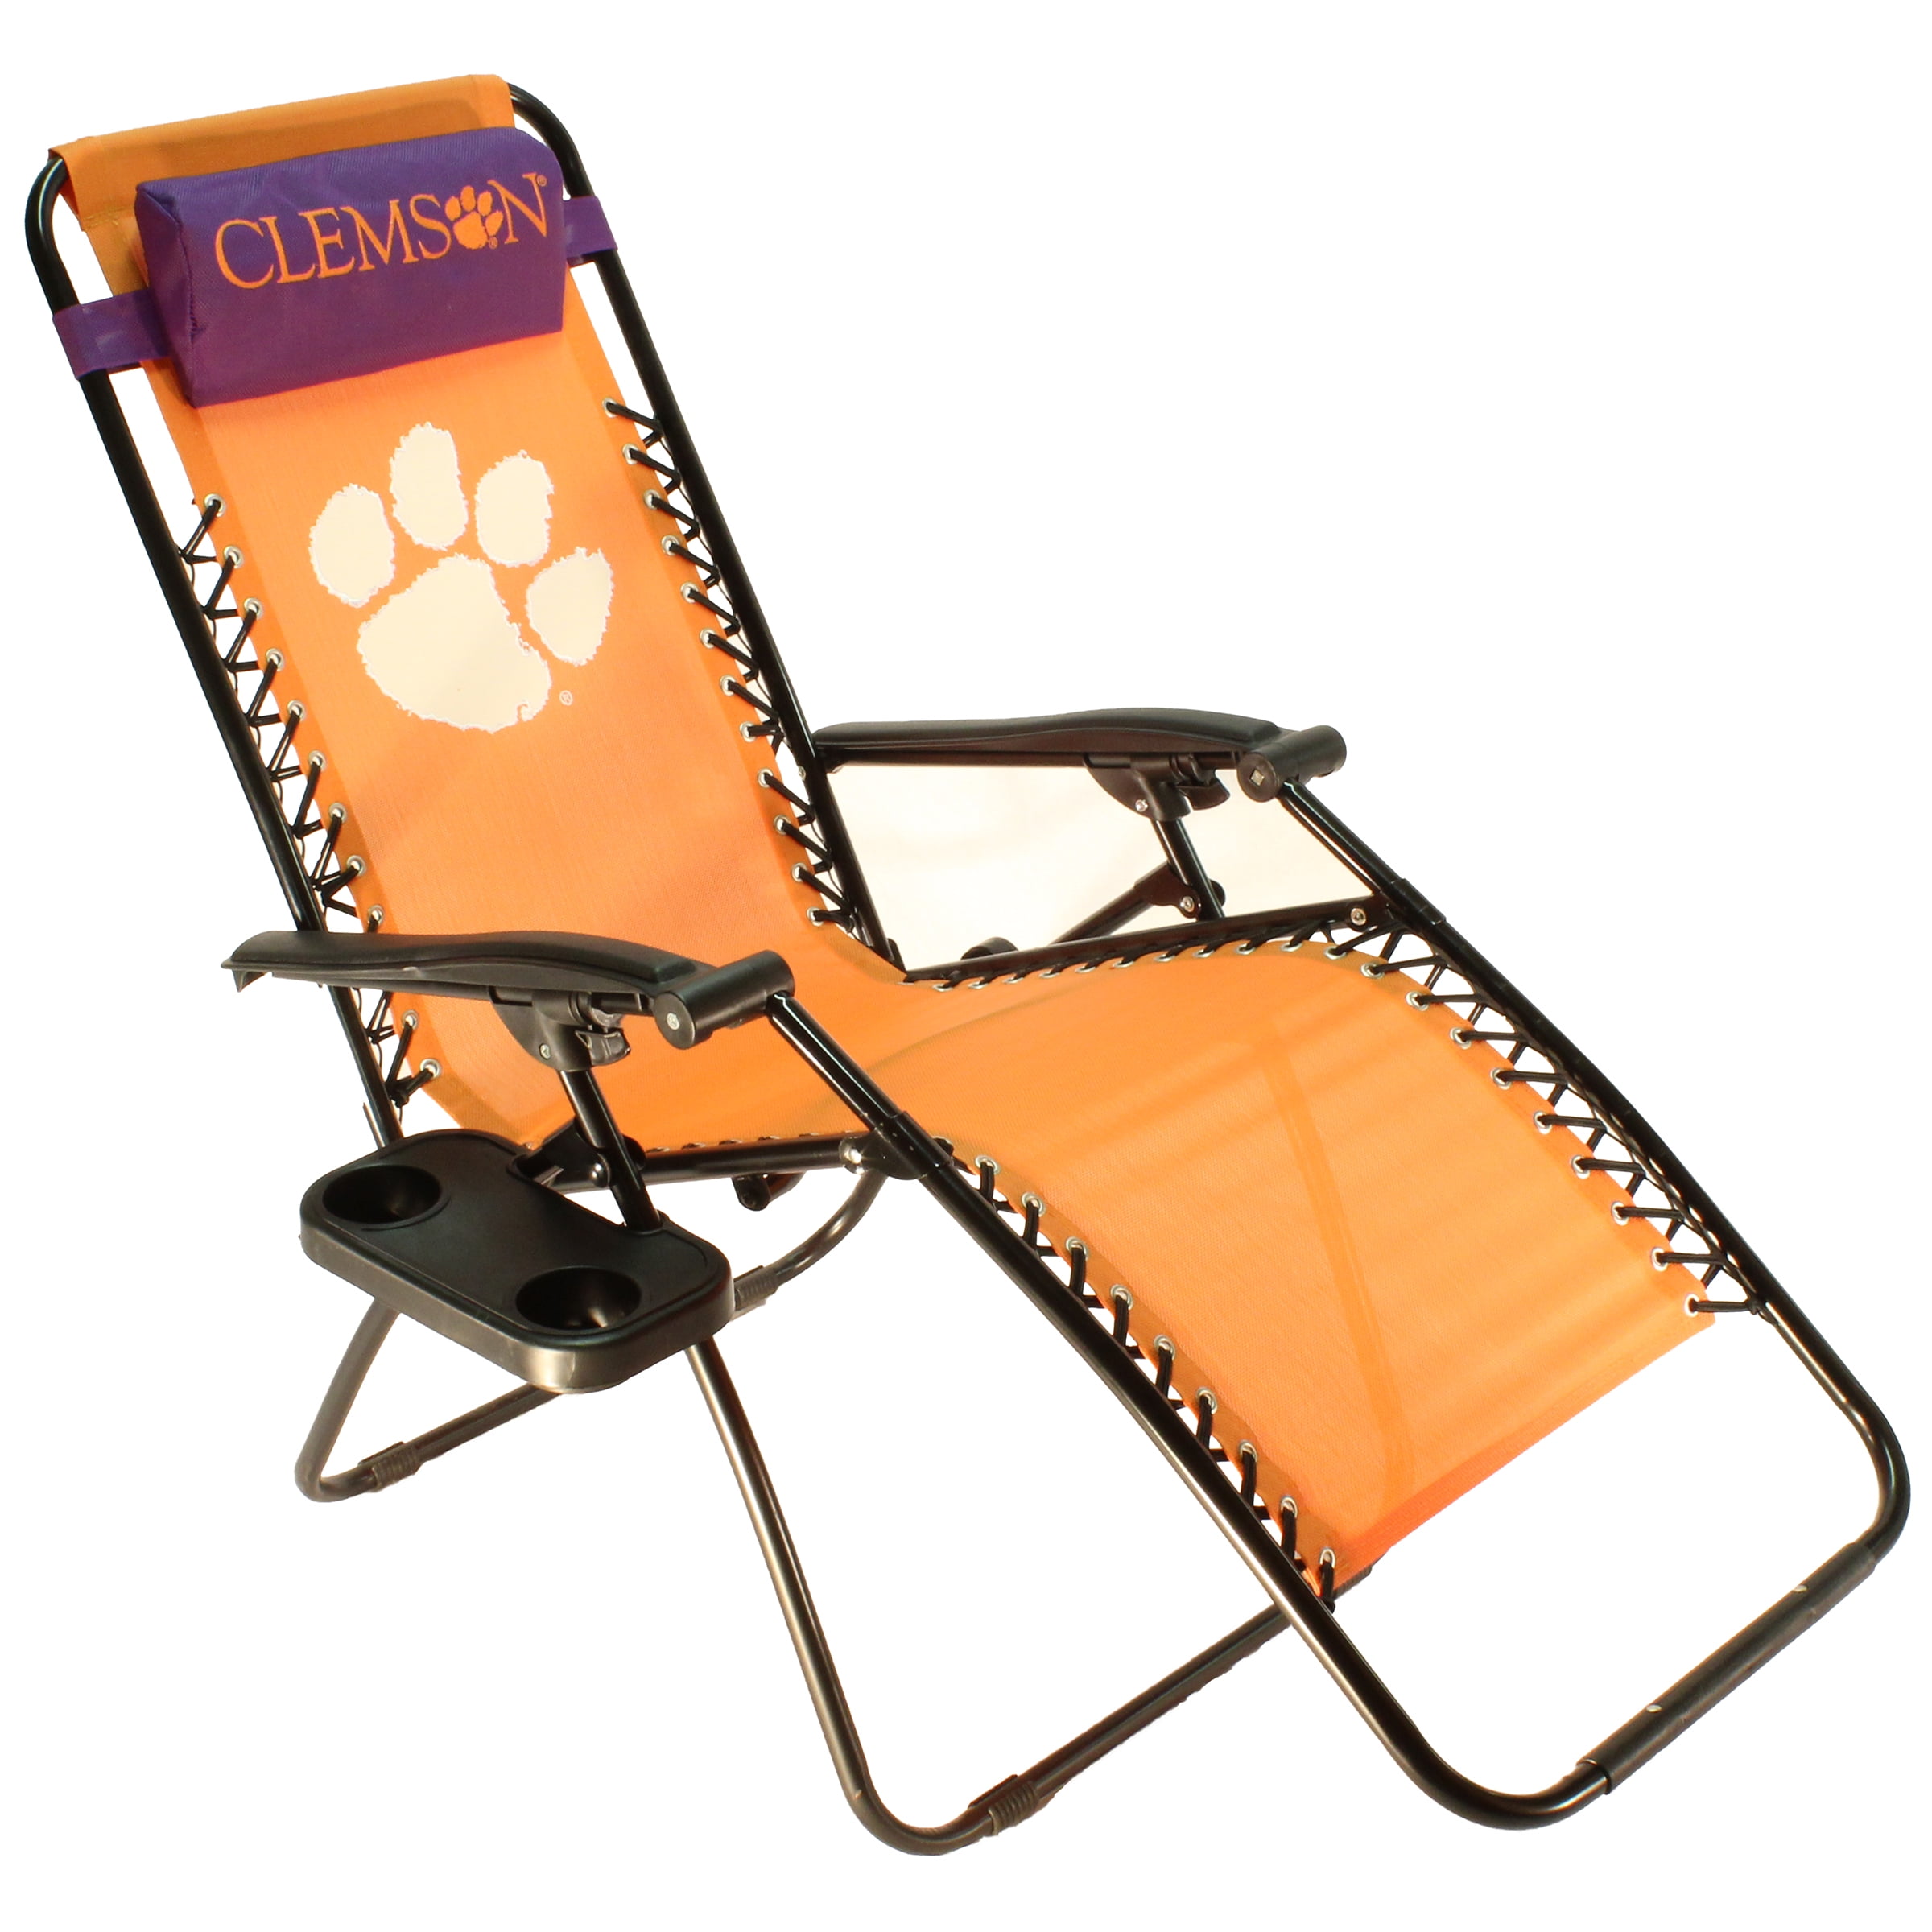 Clemson Tigers Textiline Zero Gravity Chair - Walmart.com